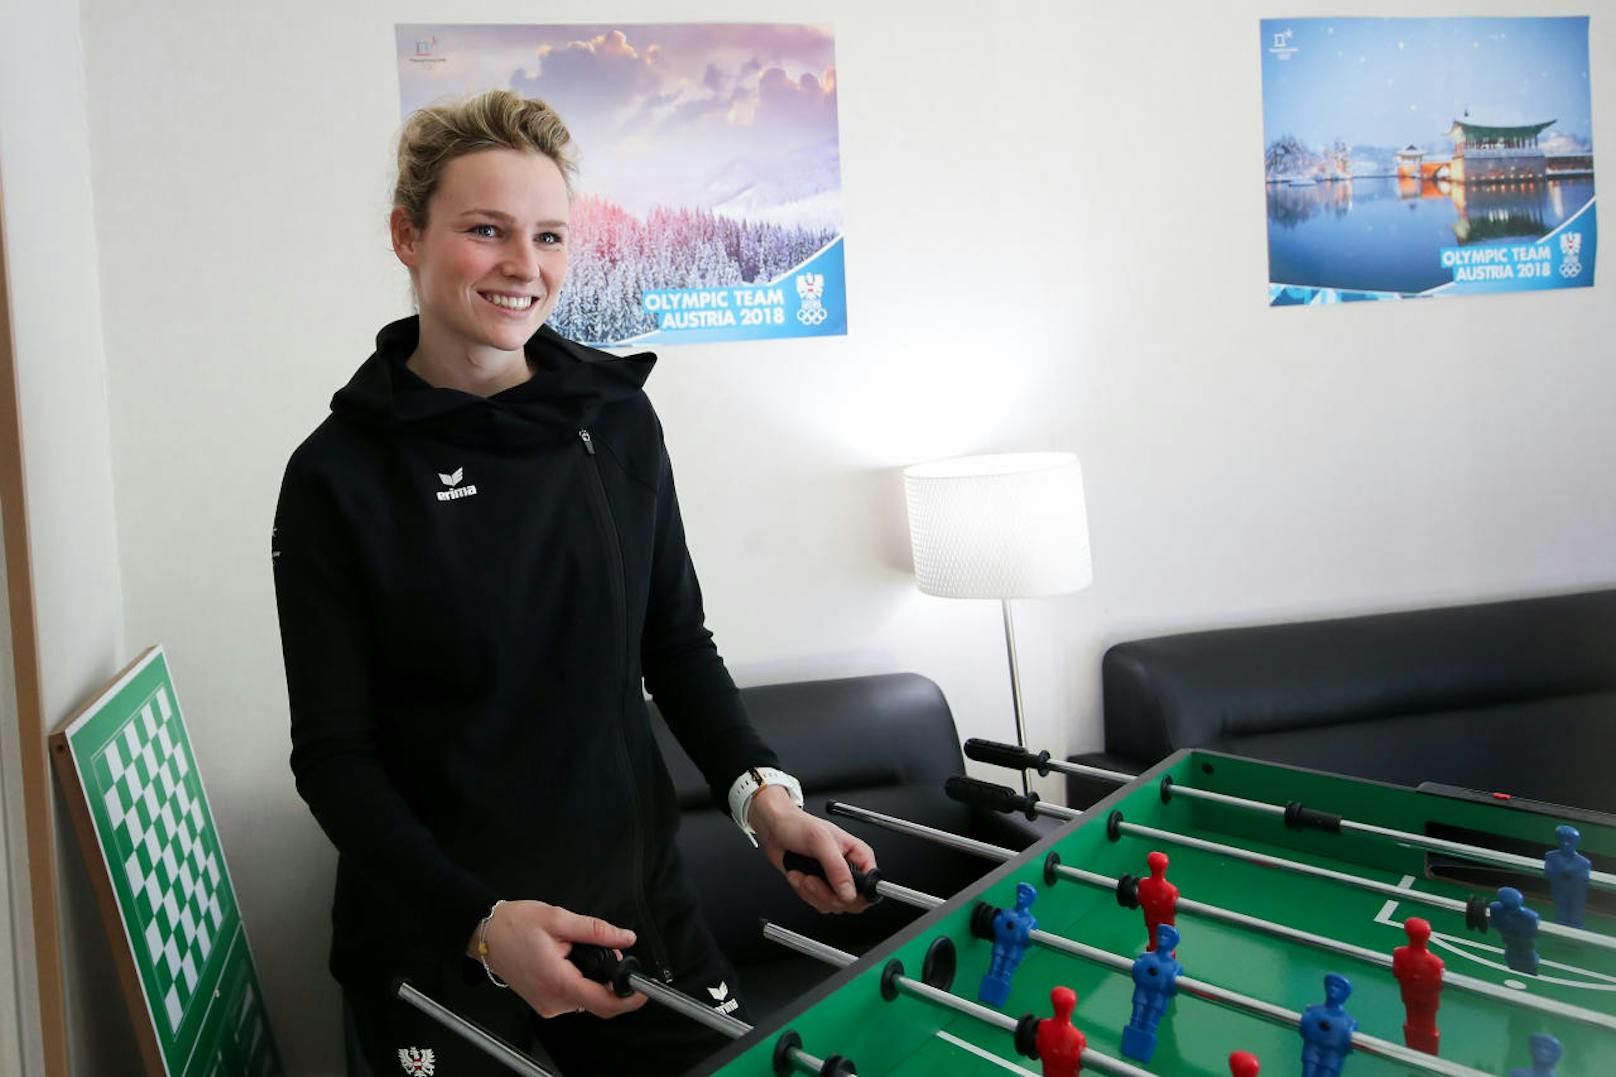 Slalom-Hoffnung Bernadette Schild vertreibt sich die Zeit mit Tischfußball.